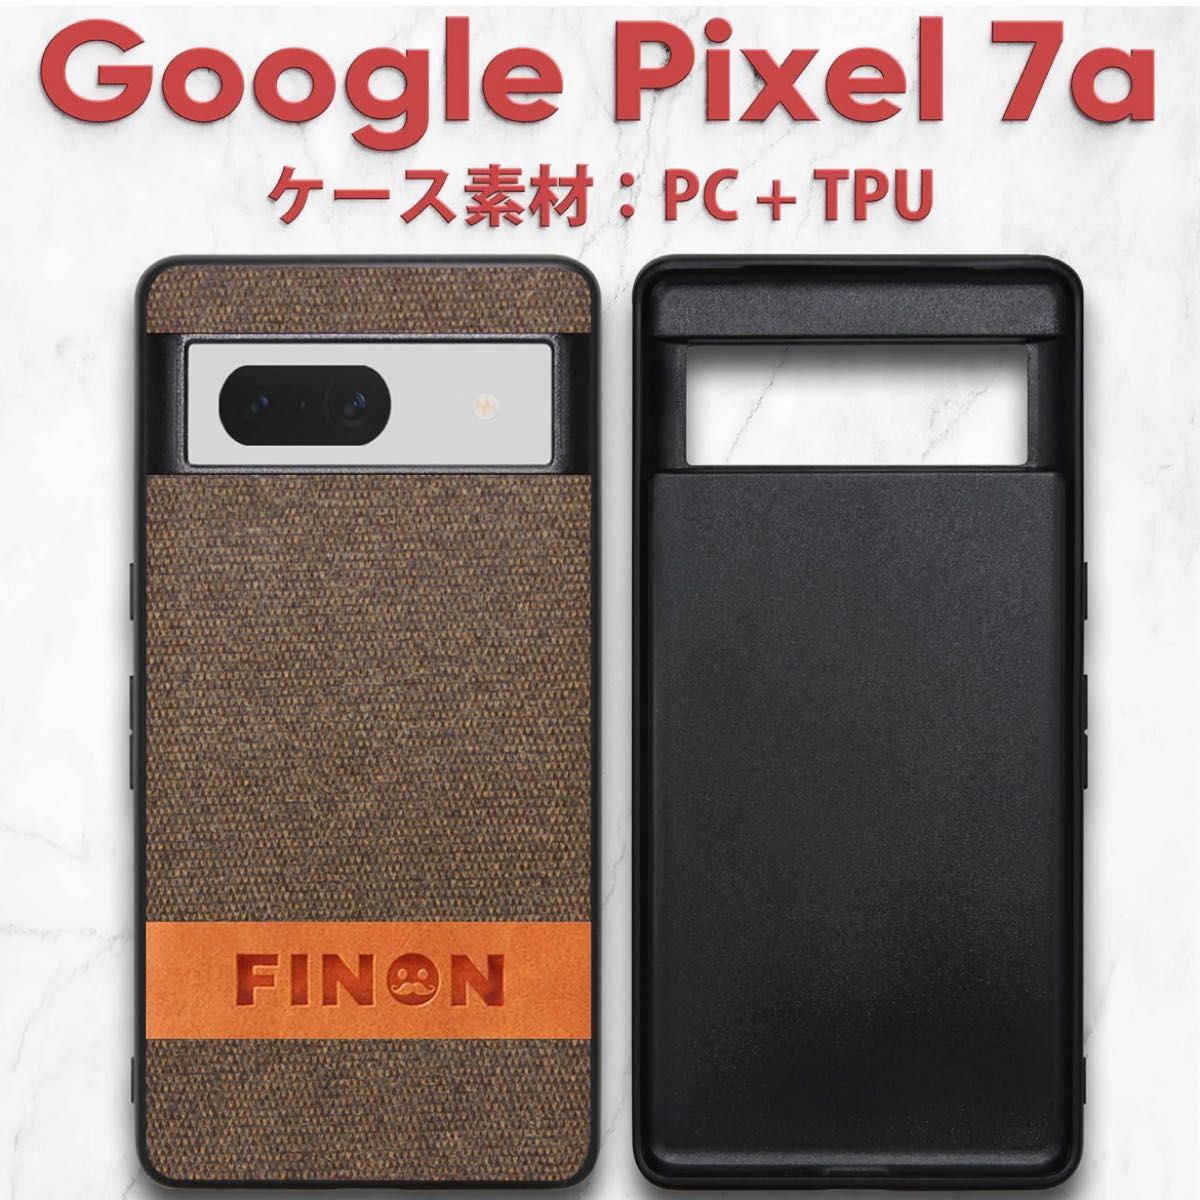 Google Pixel 7a 専用 ケース カバー 【 デザイン コットン モデル 】